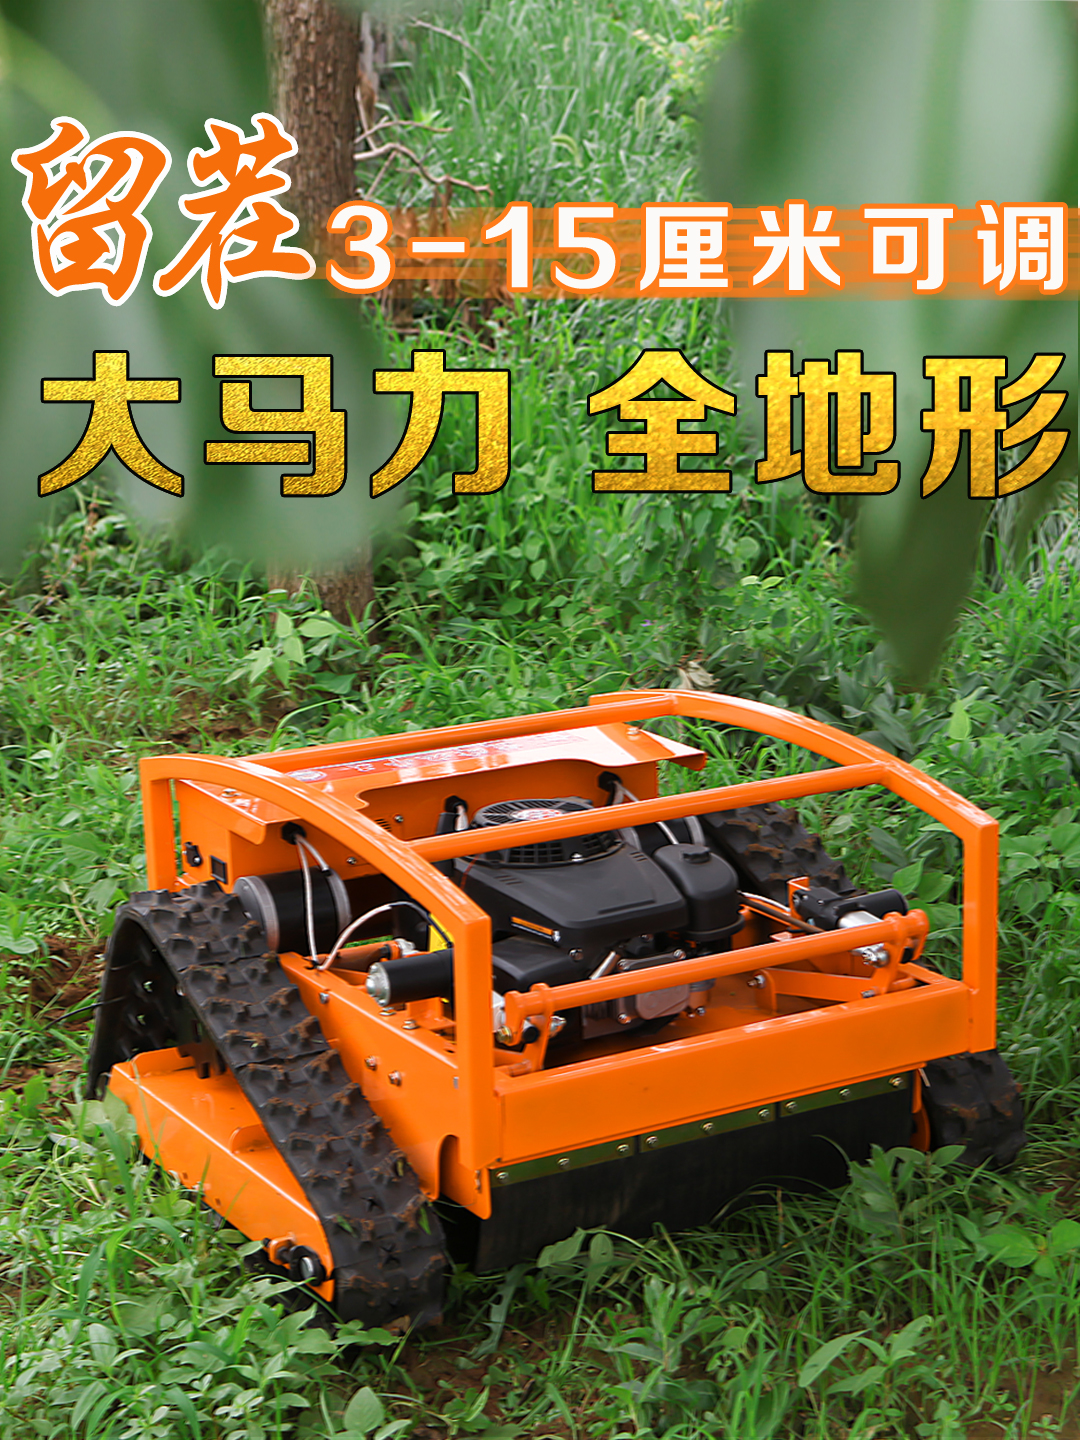 máy cắt cỏ gx35 Máy cắt cỏ điều khiển từ xa đa chức năng máy cắt cỏ chạy xăng tự động dành cho hộ gia đình nhỏ để cải tạo đất và làm vườn cấu tạo máy cắt cỏ máy cắt cỏ cầm tay chạy xăng Máy cắt cỏ